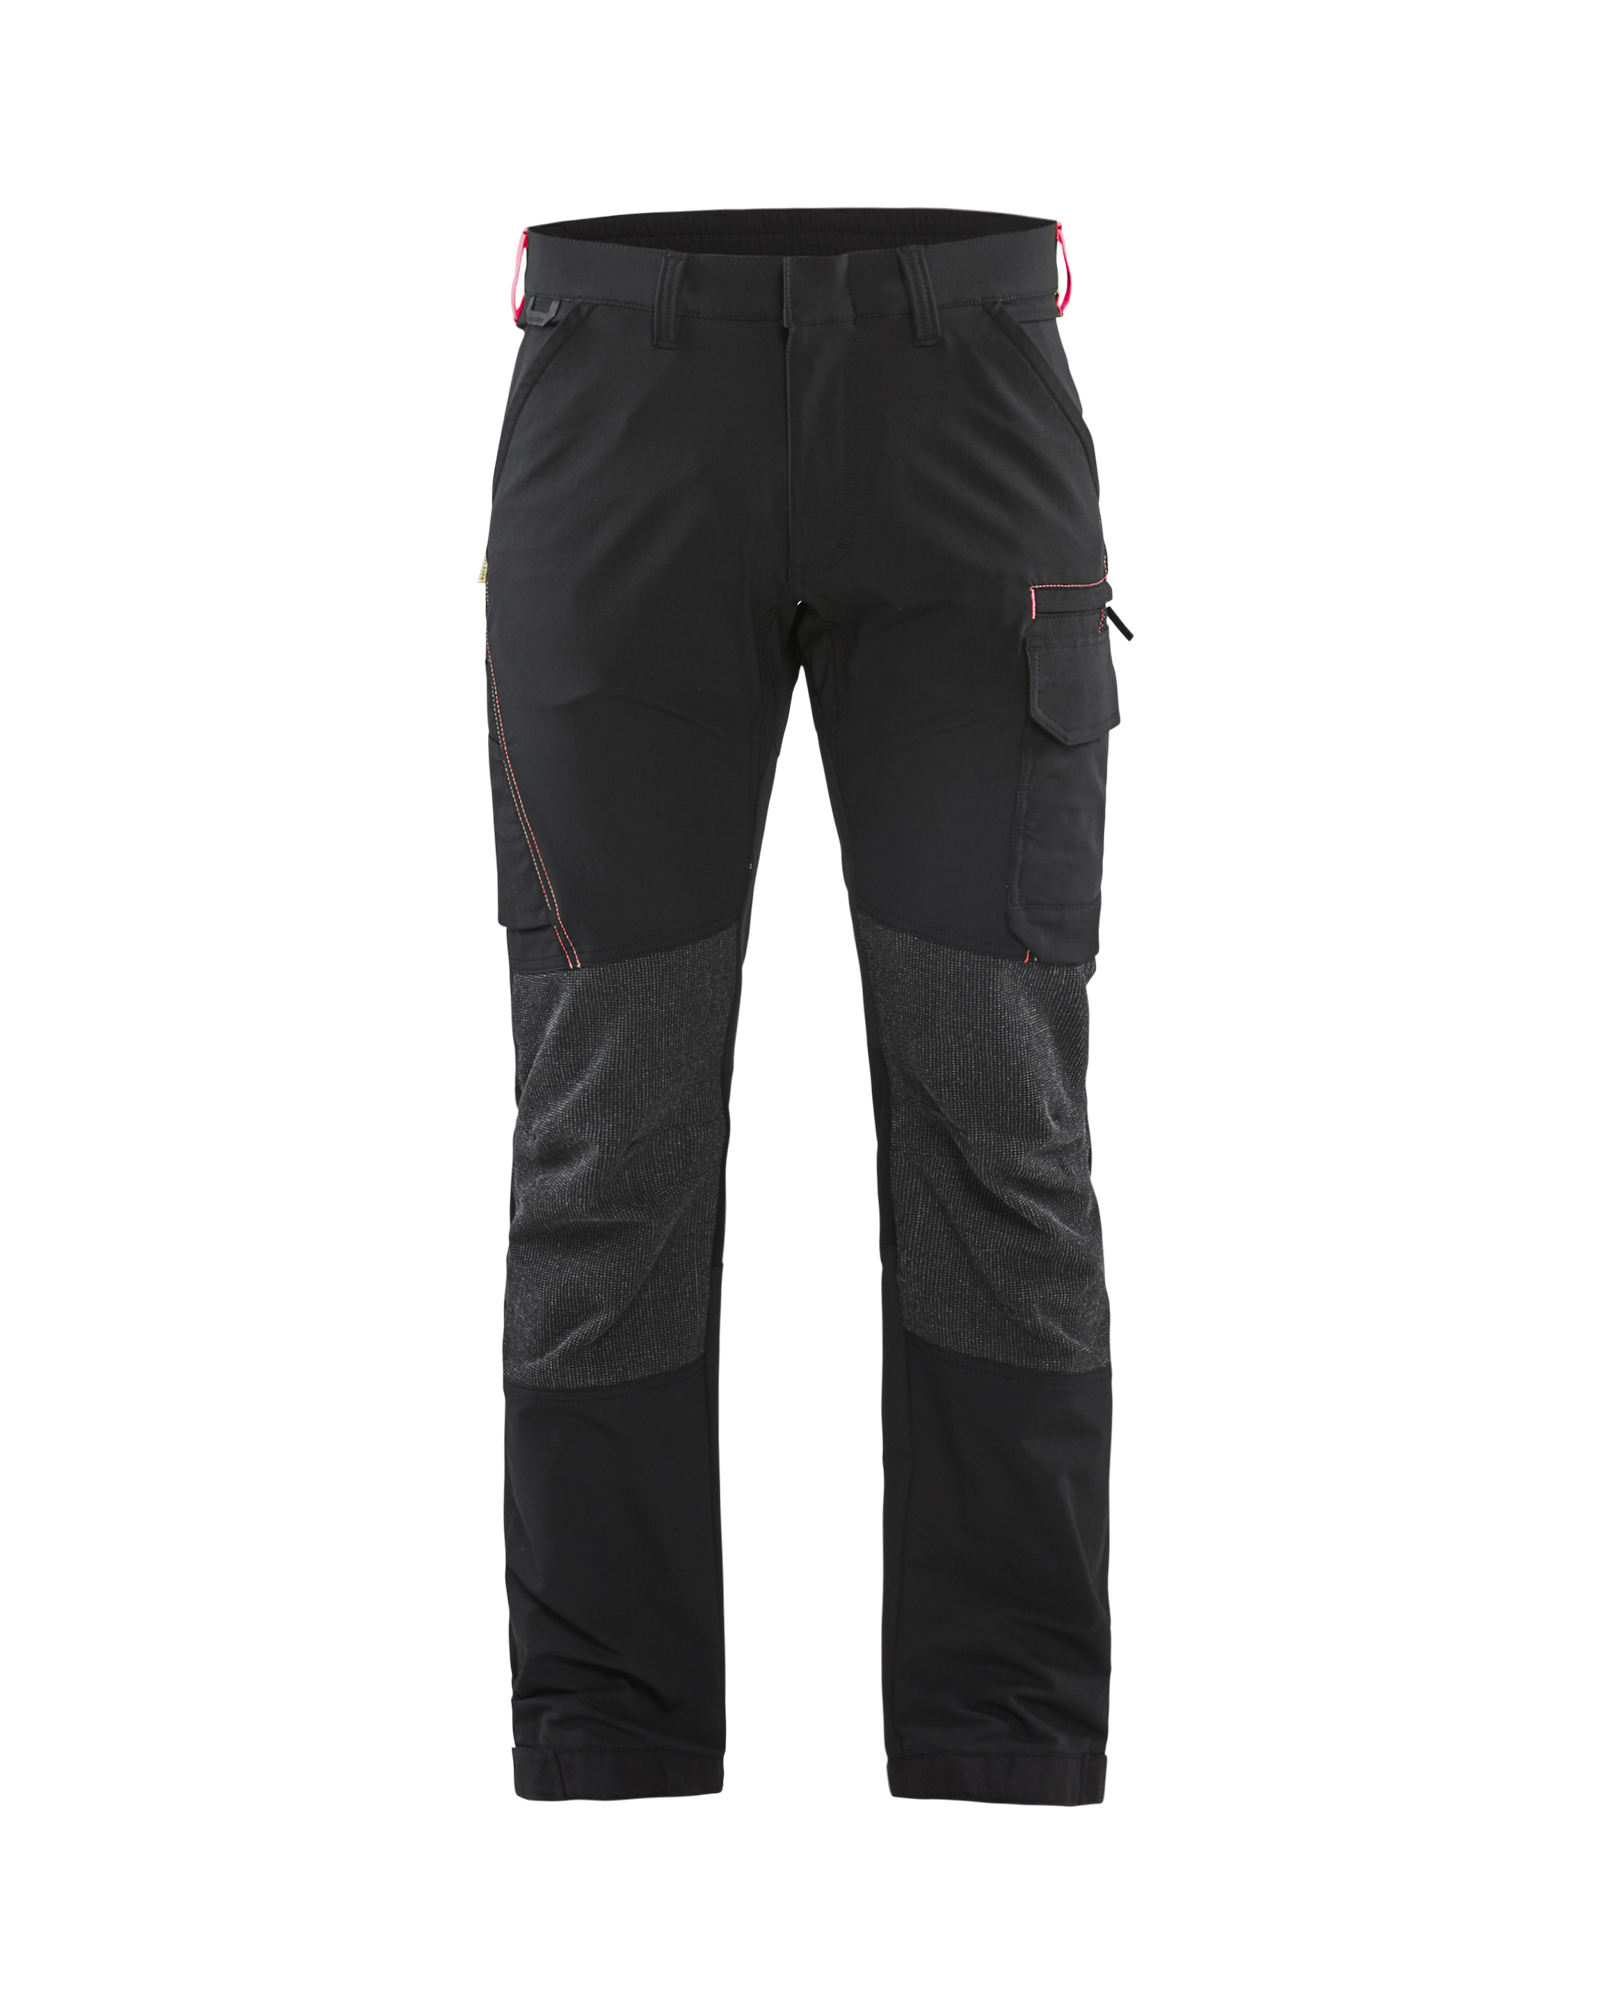 Pantalon maintenance stretch 4D Blåkläder 1422 Noir/Rouge Blaklader - 142216459956C